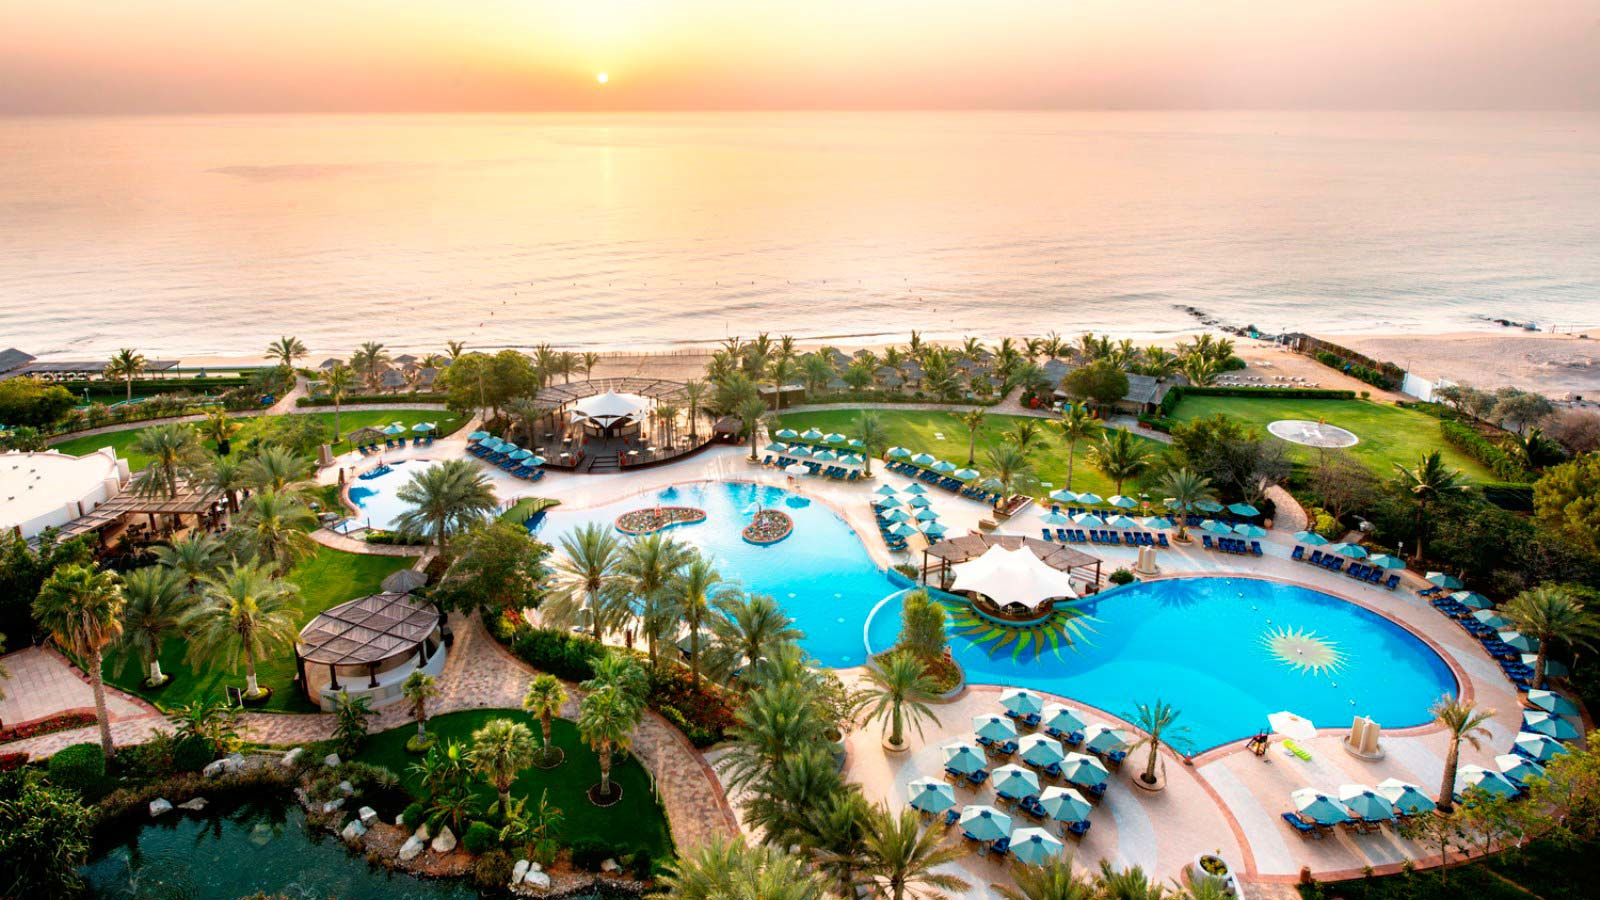 Pool and Garden at Le Meridien Al Aqah Beach Resort in Fujairah, UAE